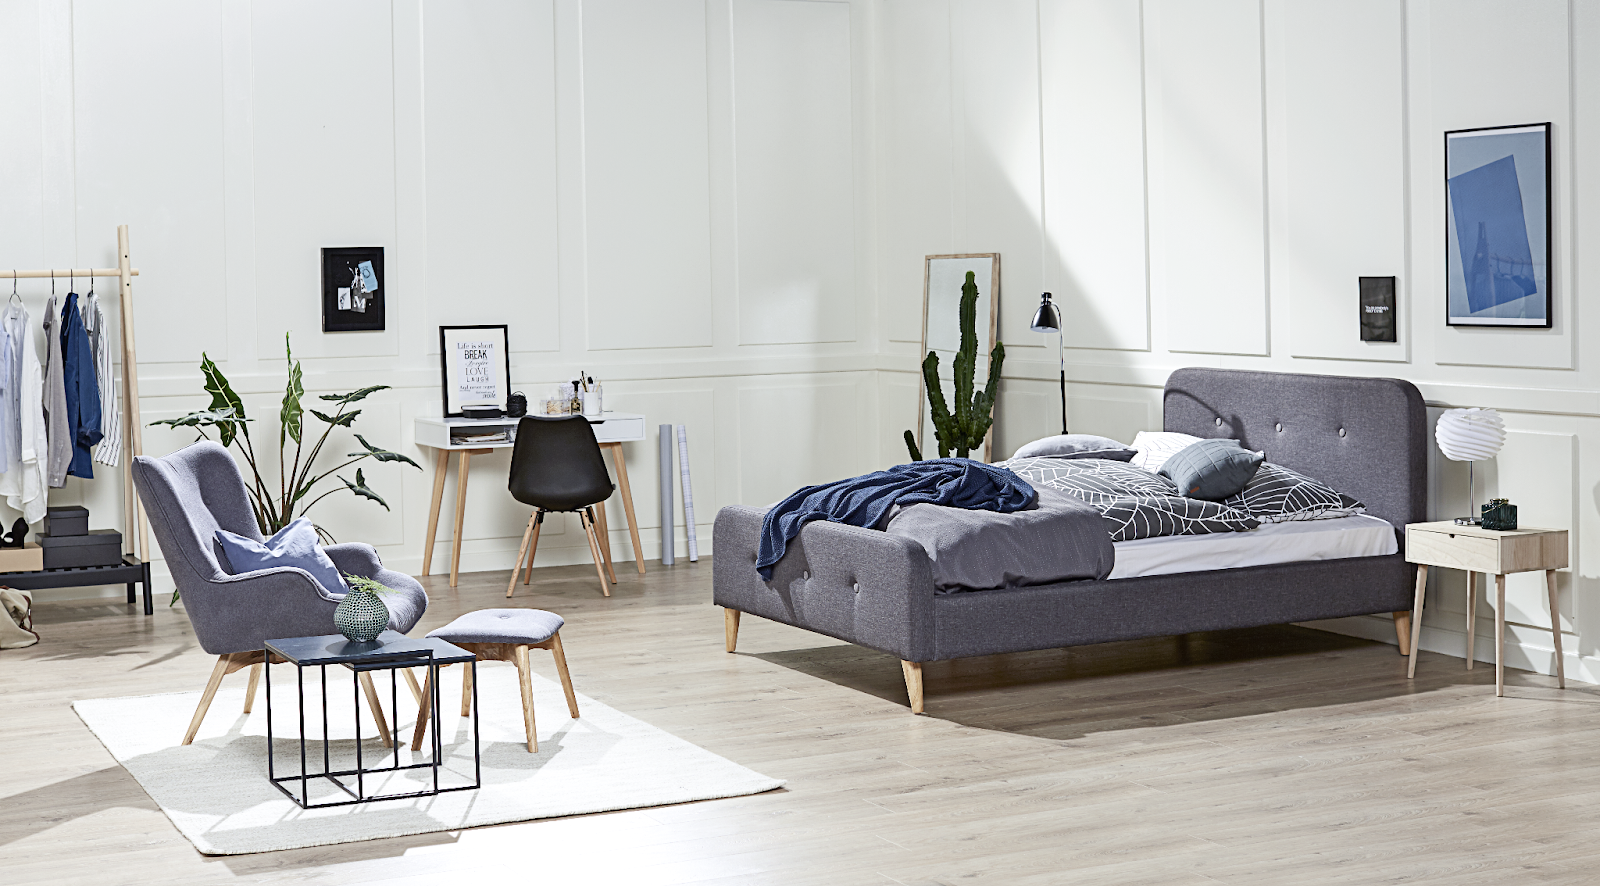 Ghế bành kèm đôn SKALBORG polyester/ sồi màu xám đậm trên nền phòng ngủ trắng cho thiết kế phòng ngủ nam đơn giản